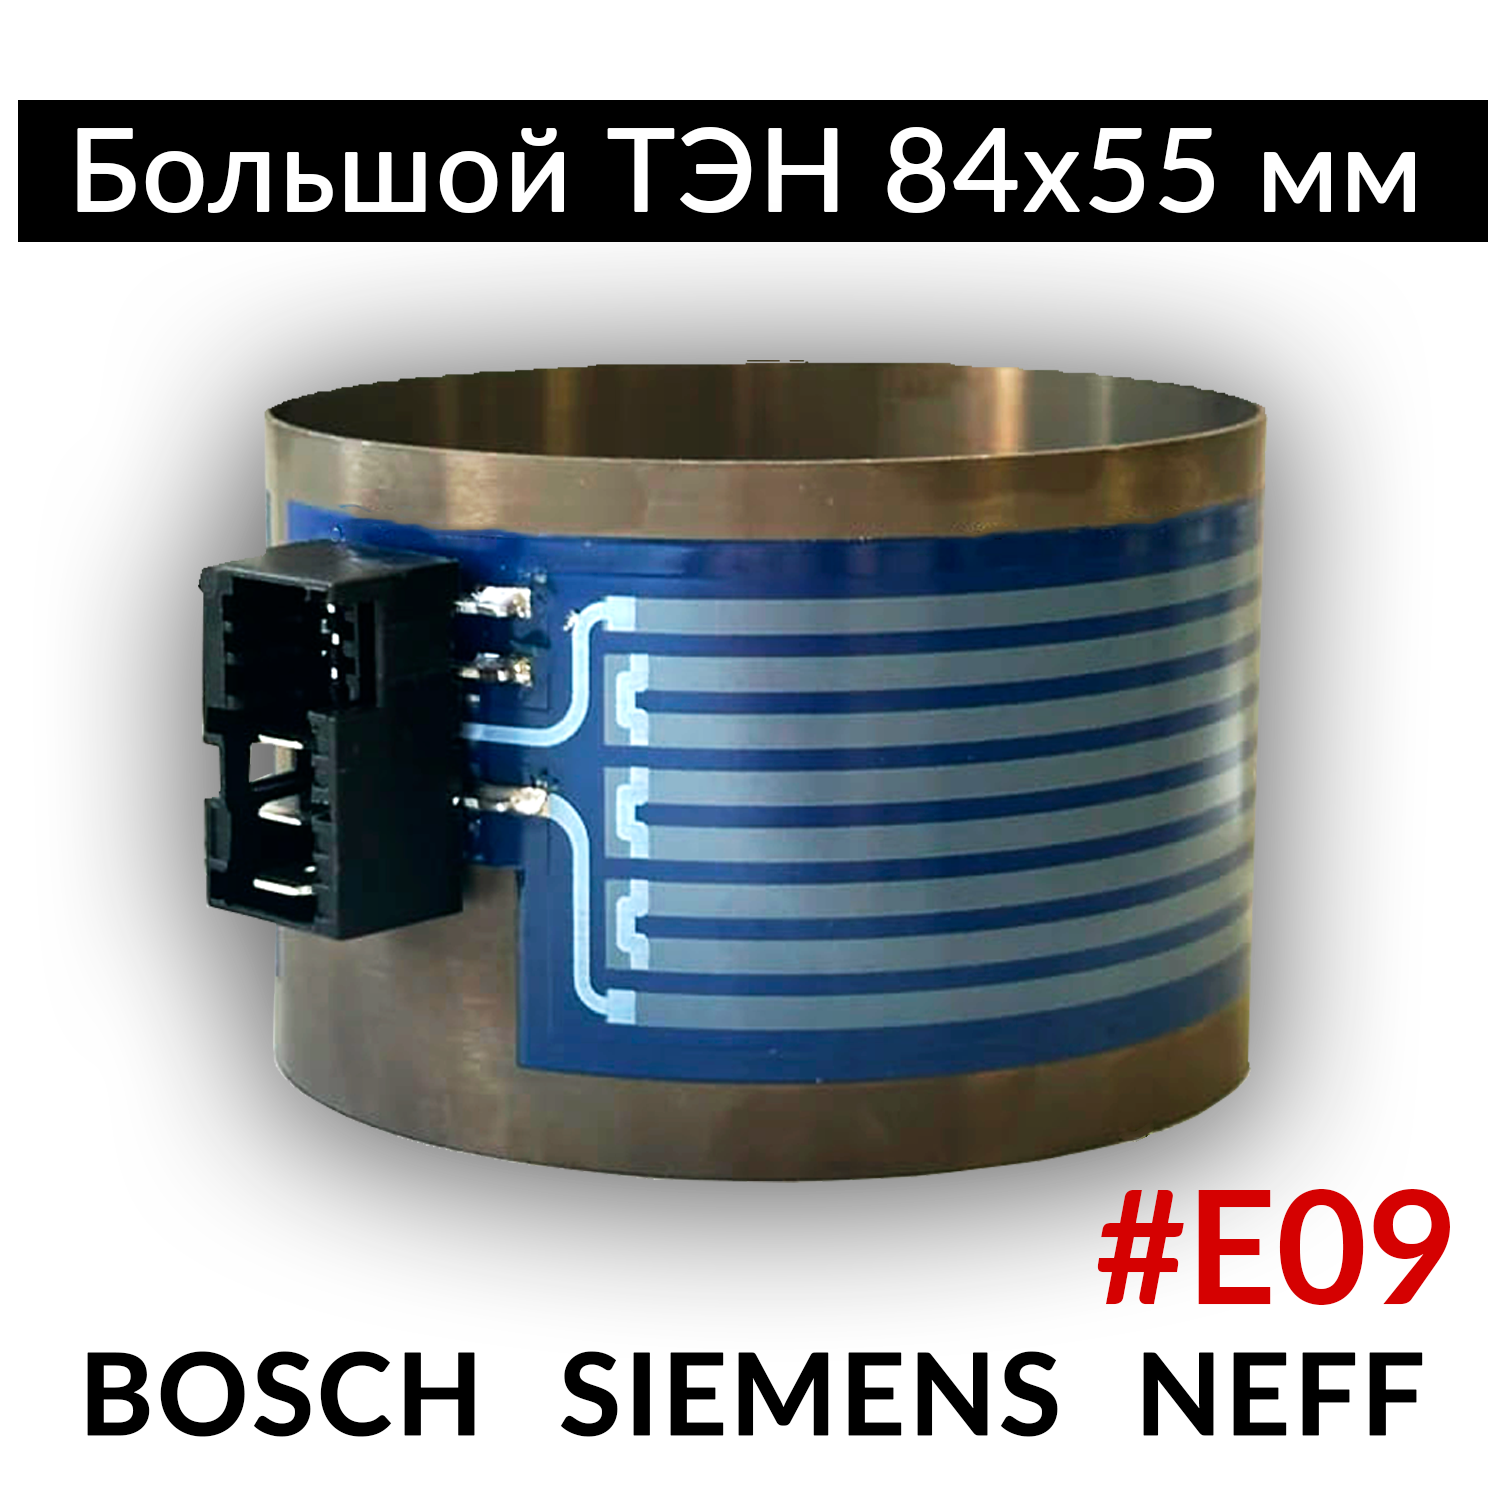 Большой Тэн 84х55 (нагреватель) для посудомоечной машины Bosch, Siemens, Neff